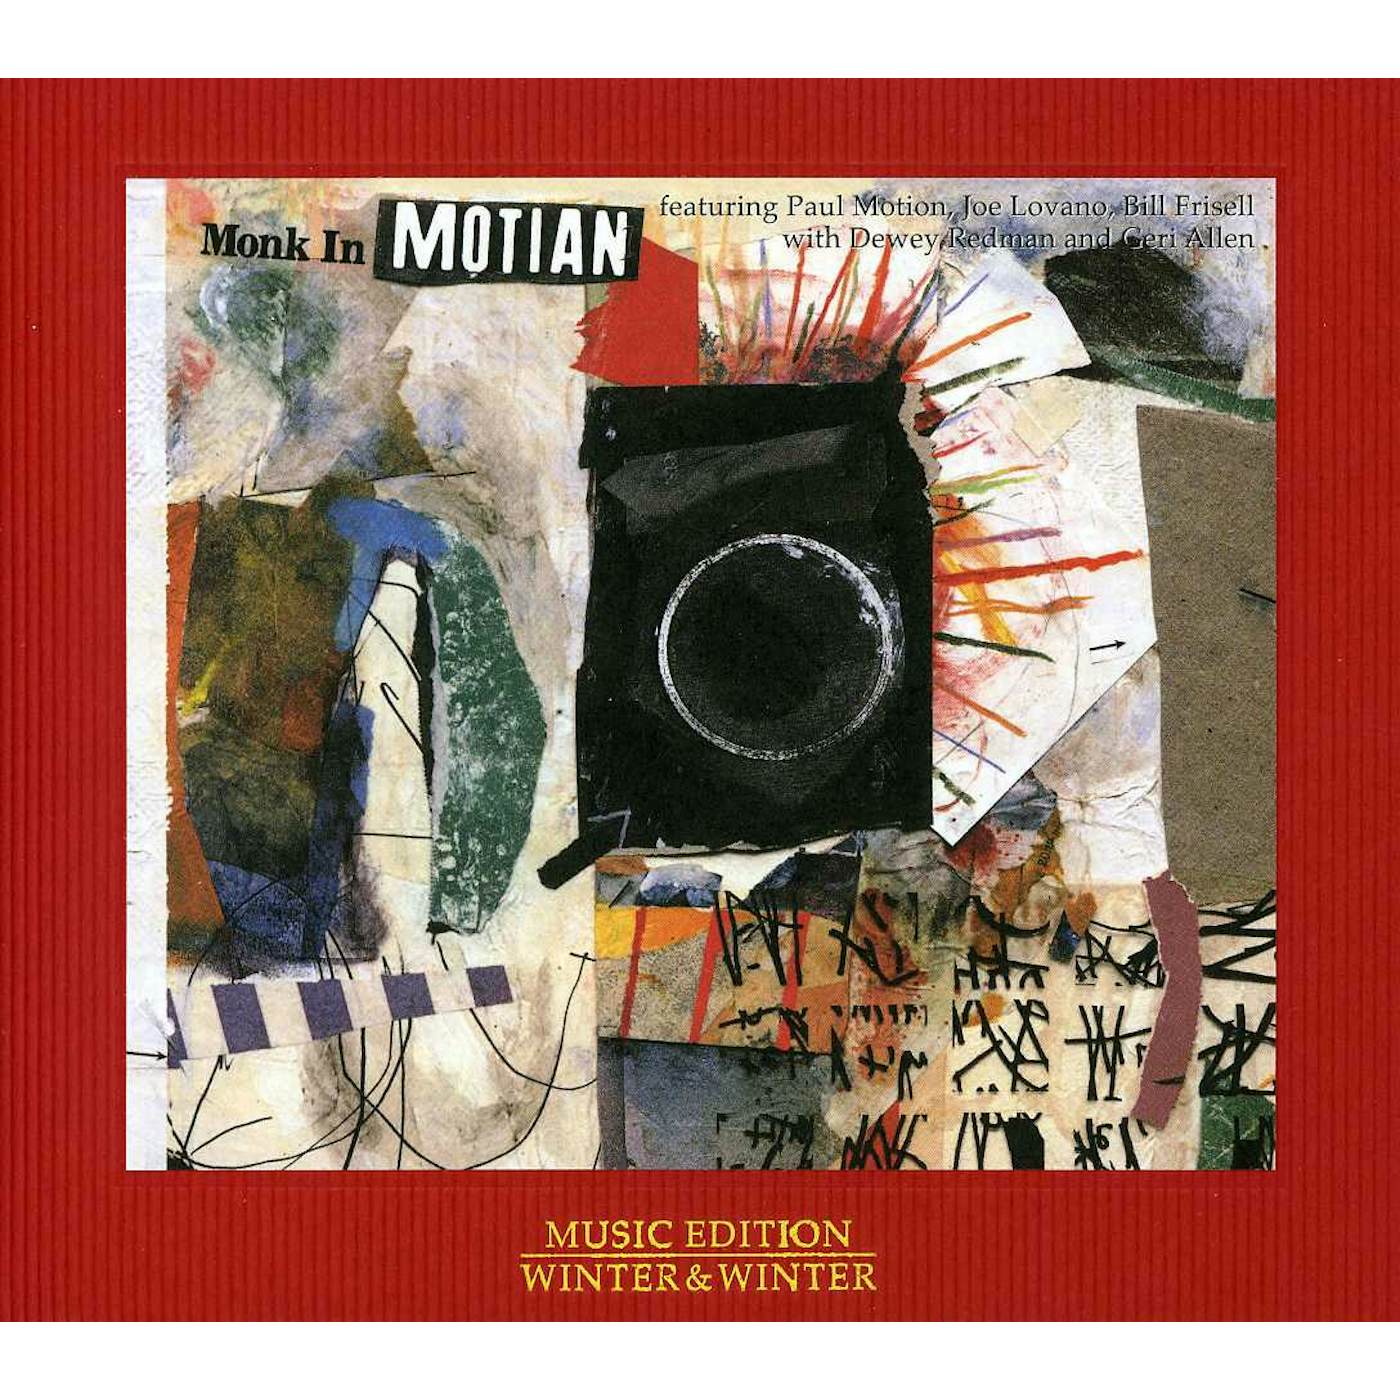 Paul Motian MONK IN MOTIAN CD